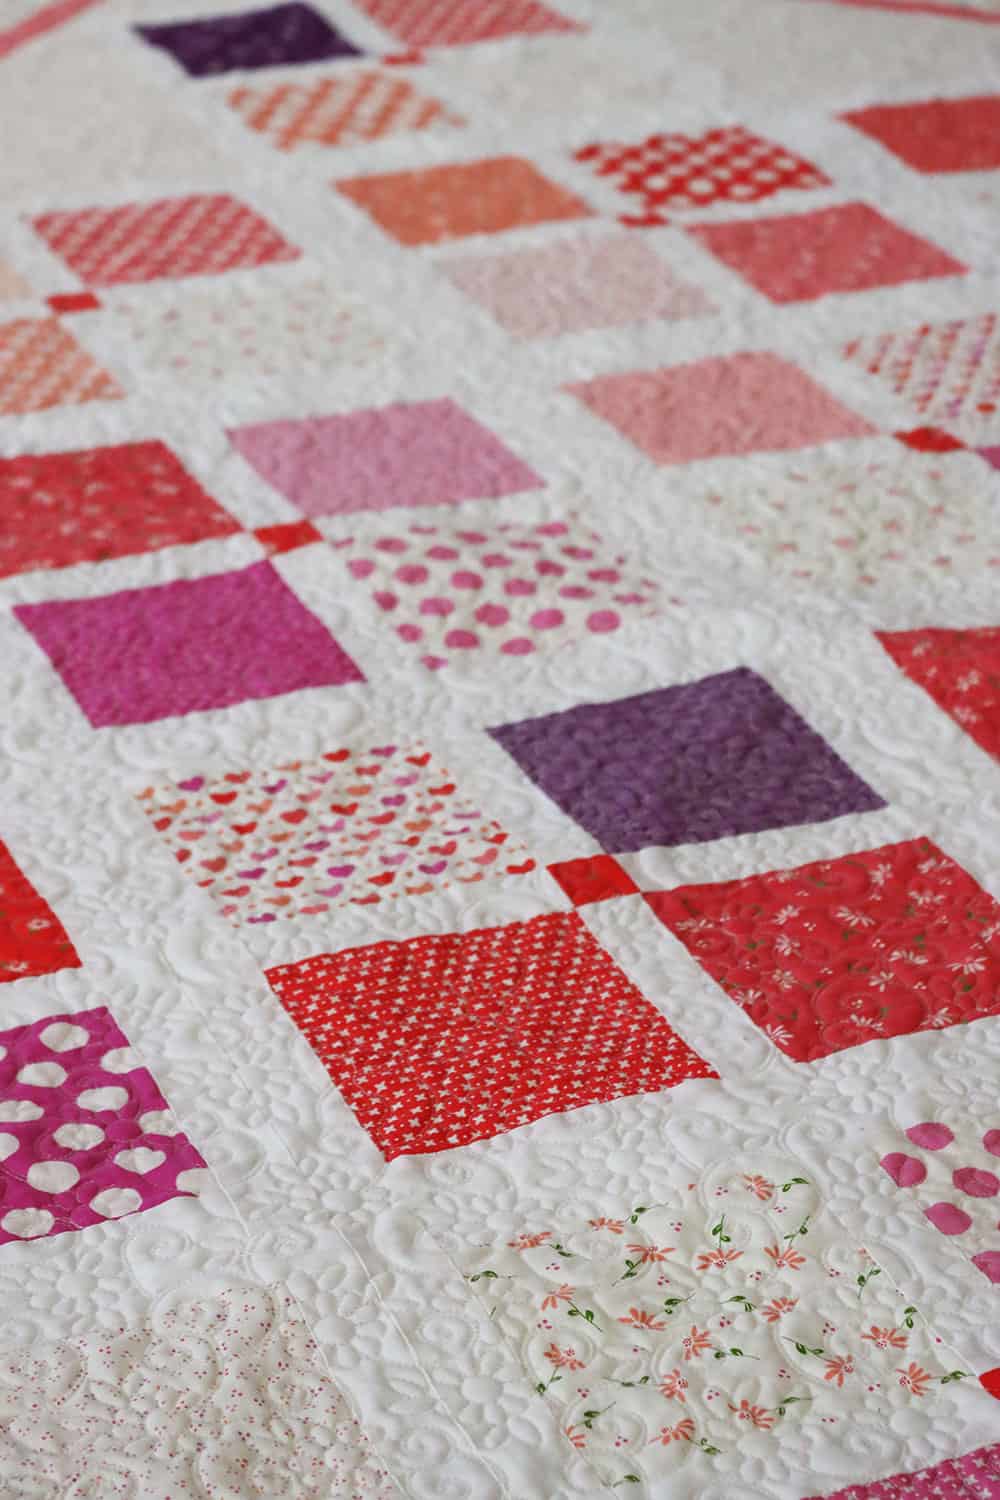 Four Square Patchwork Quilt in Valentine's fabrics